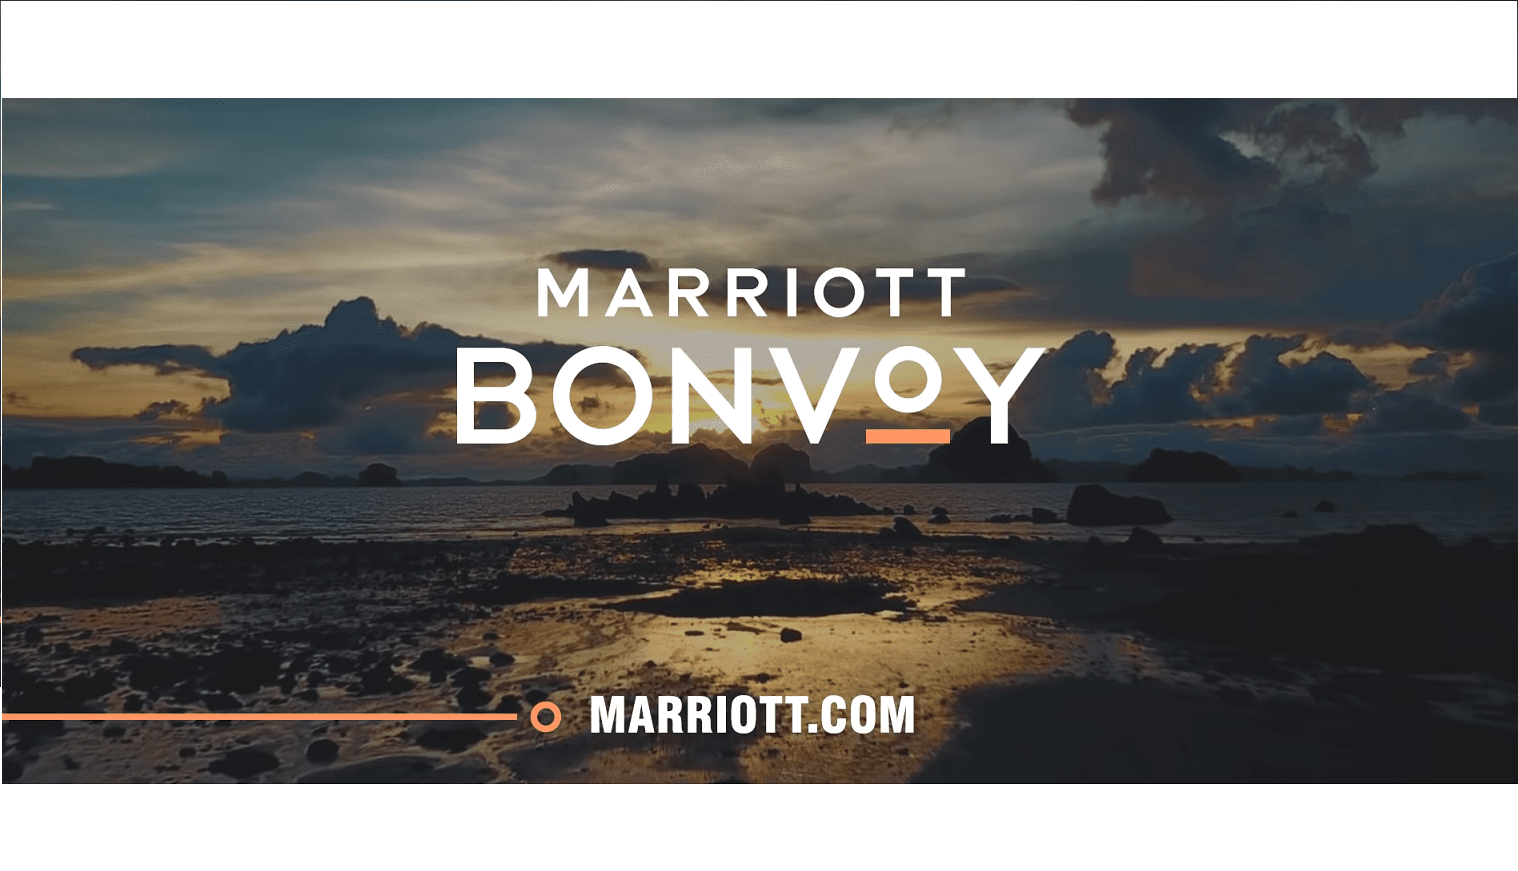 Marriott Bonvoy launching dynamic reward pricing on 29th March